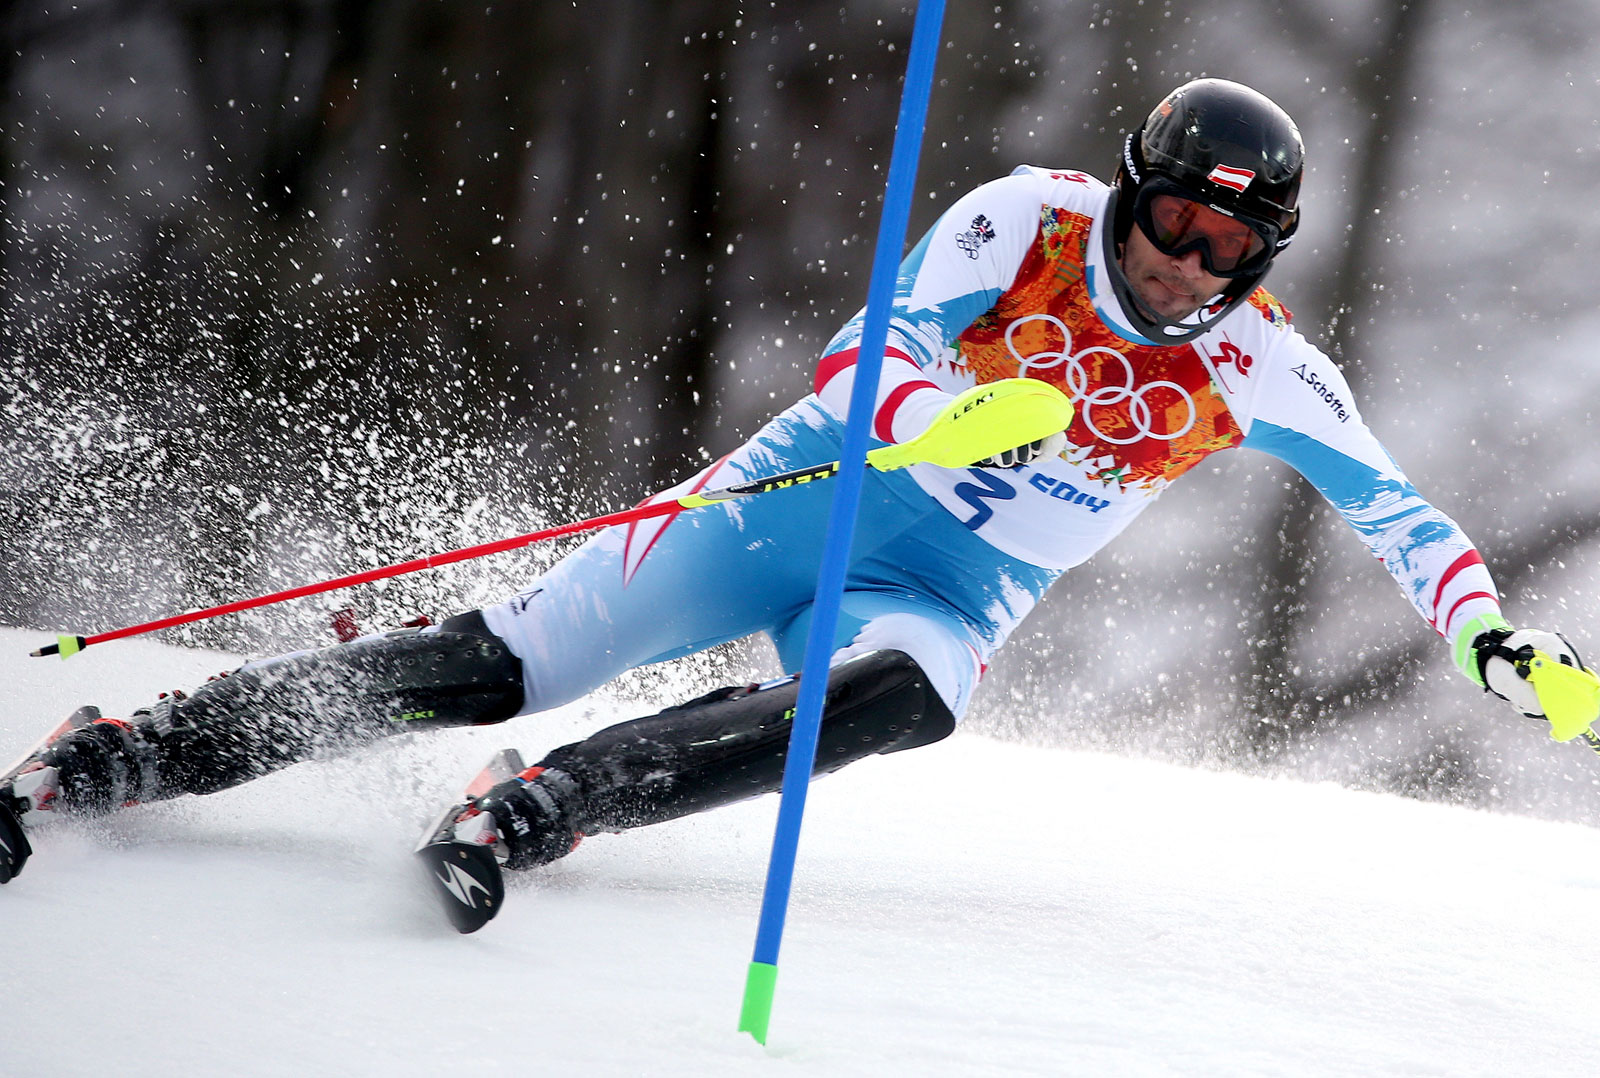 Ski Legend Mario Matt Opens The Ski Season In Bansko